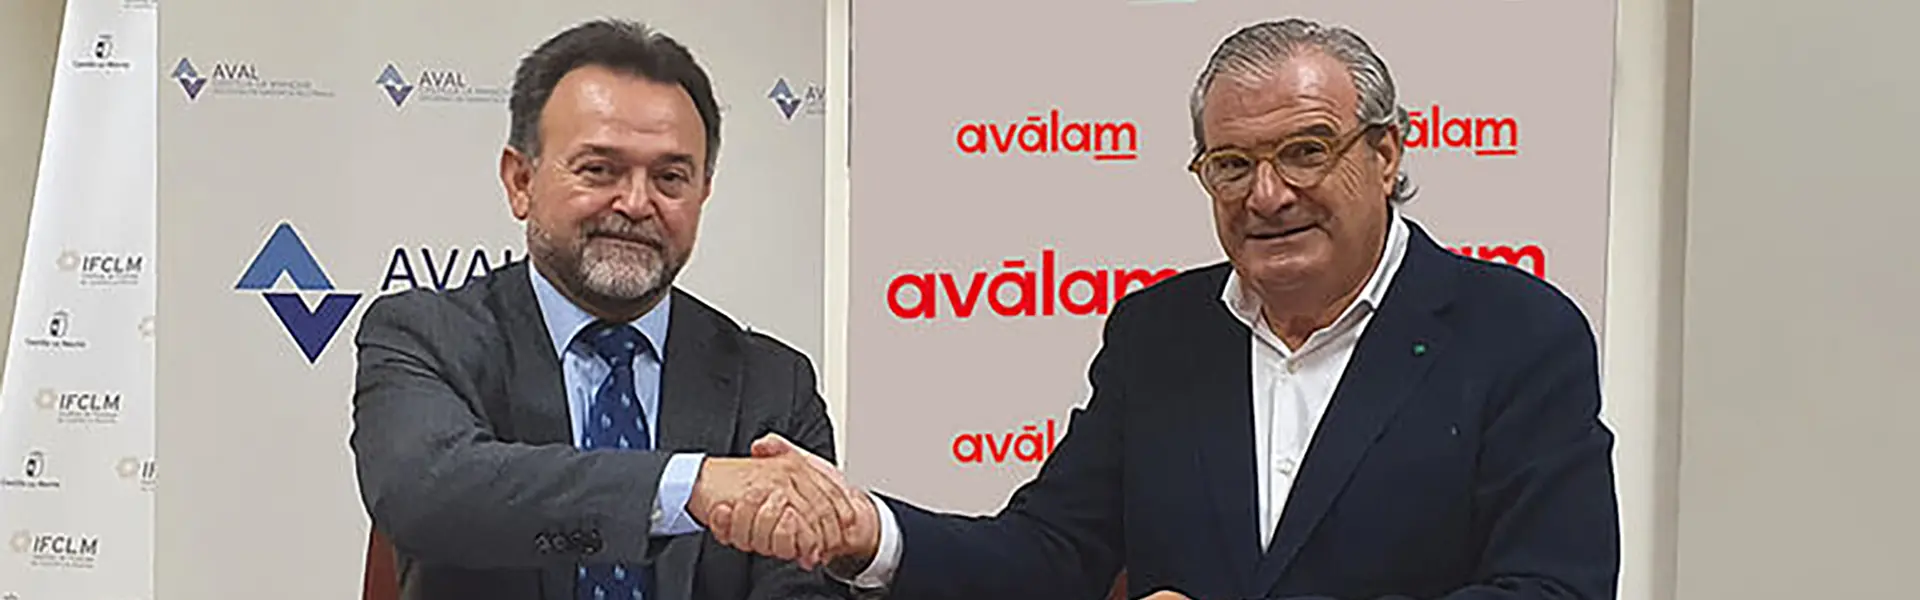 Las pymes que quieran expandirse a Castilla La Mancha seran financiadas por Avalam ultimas noticias